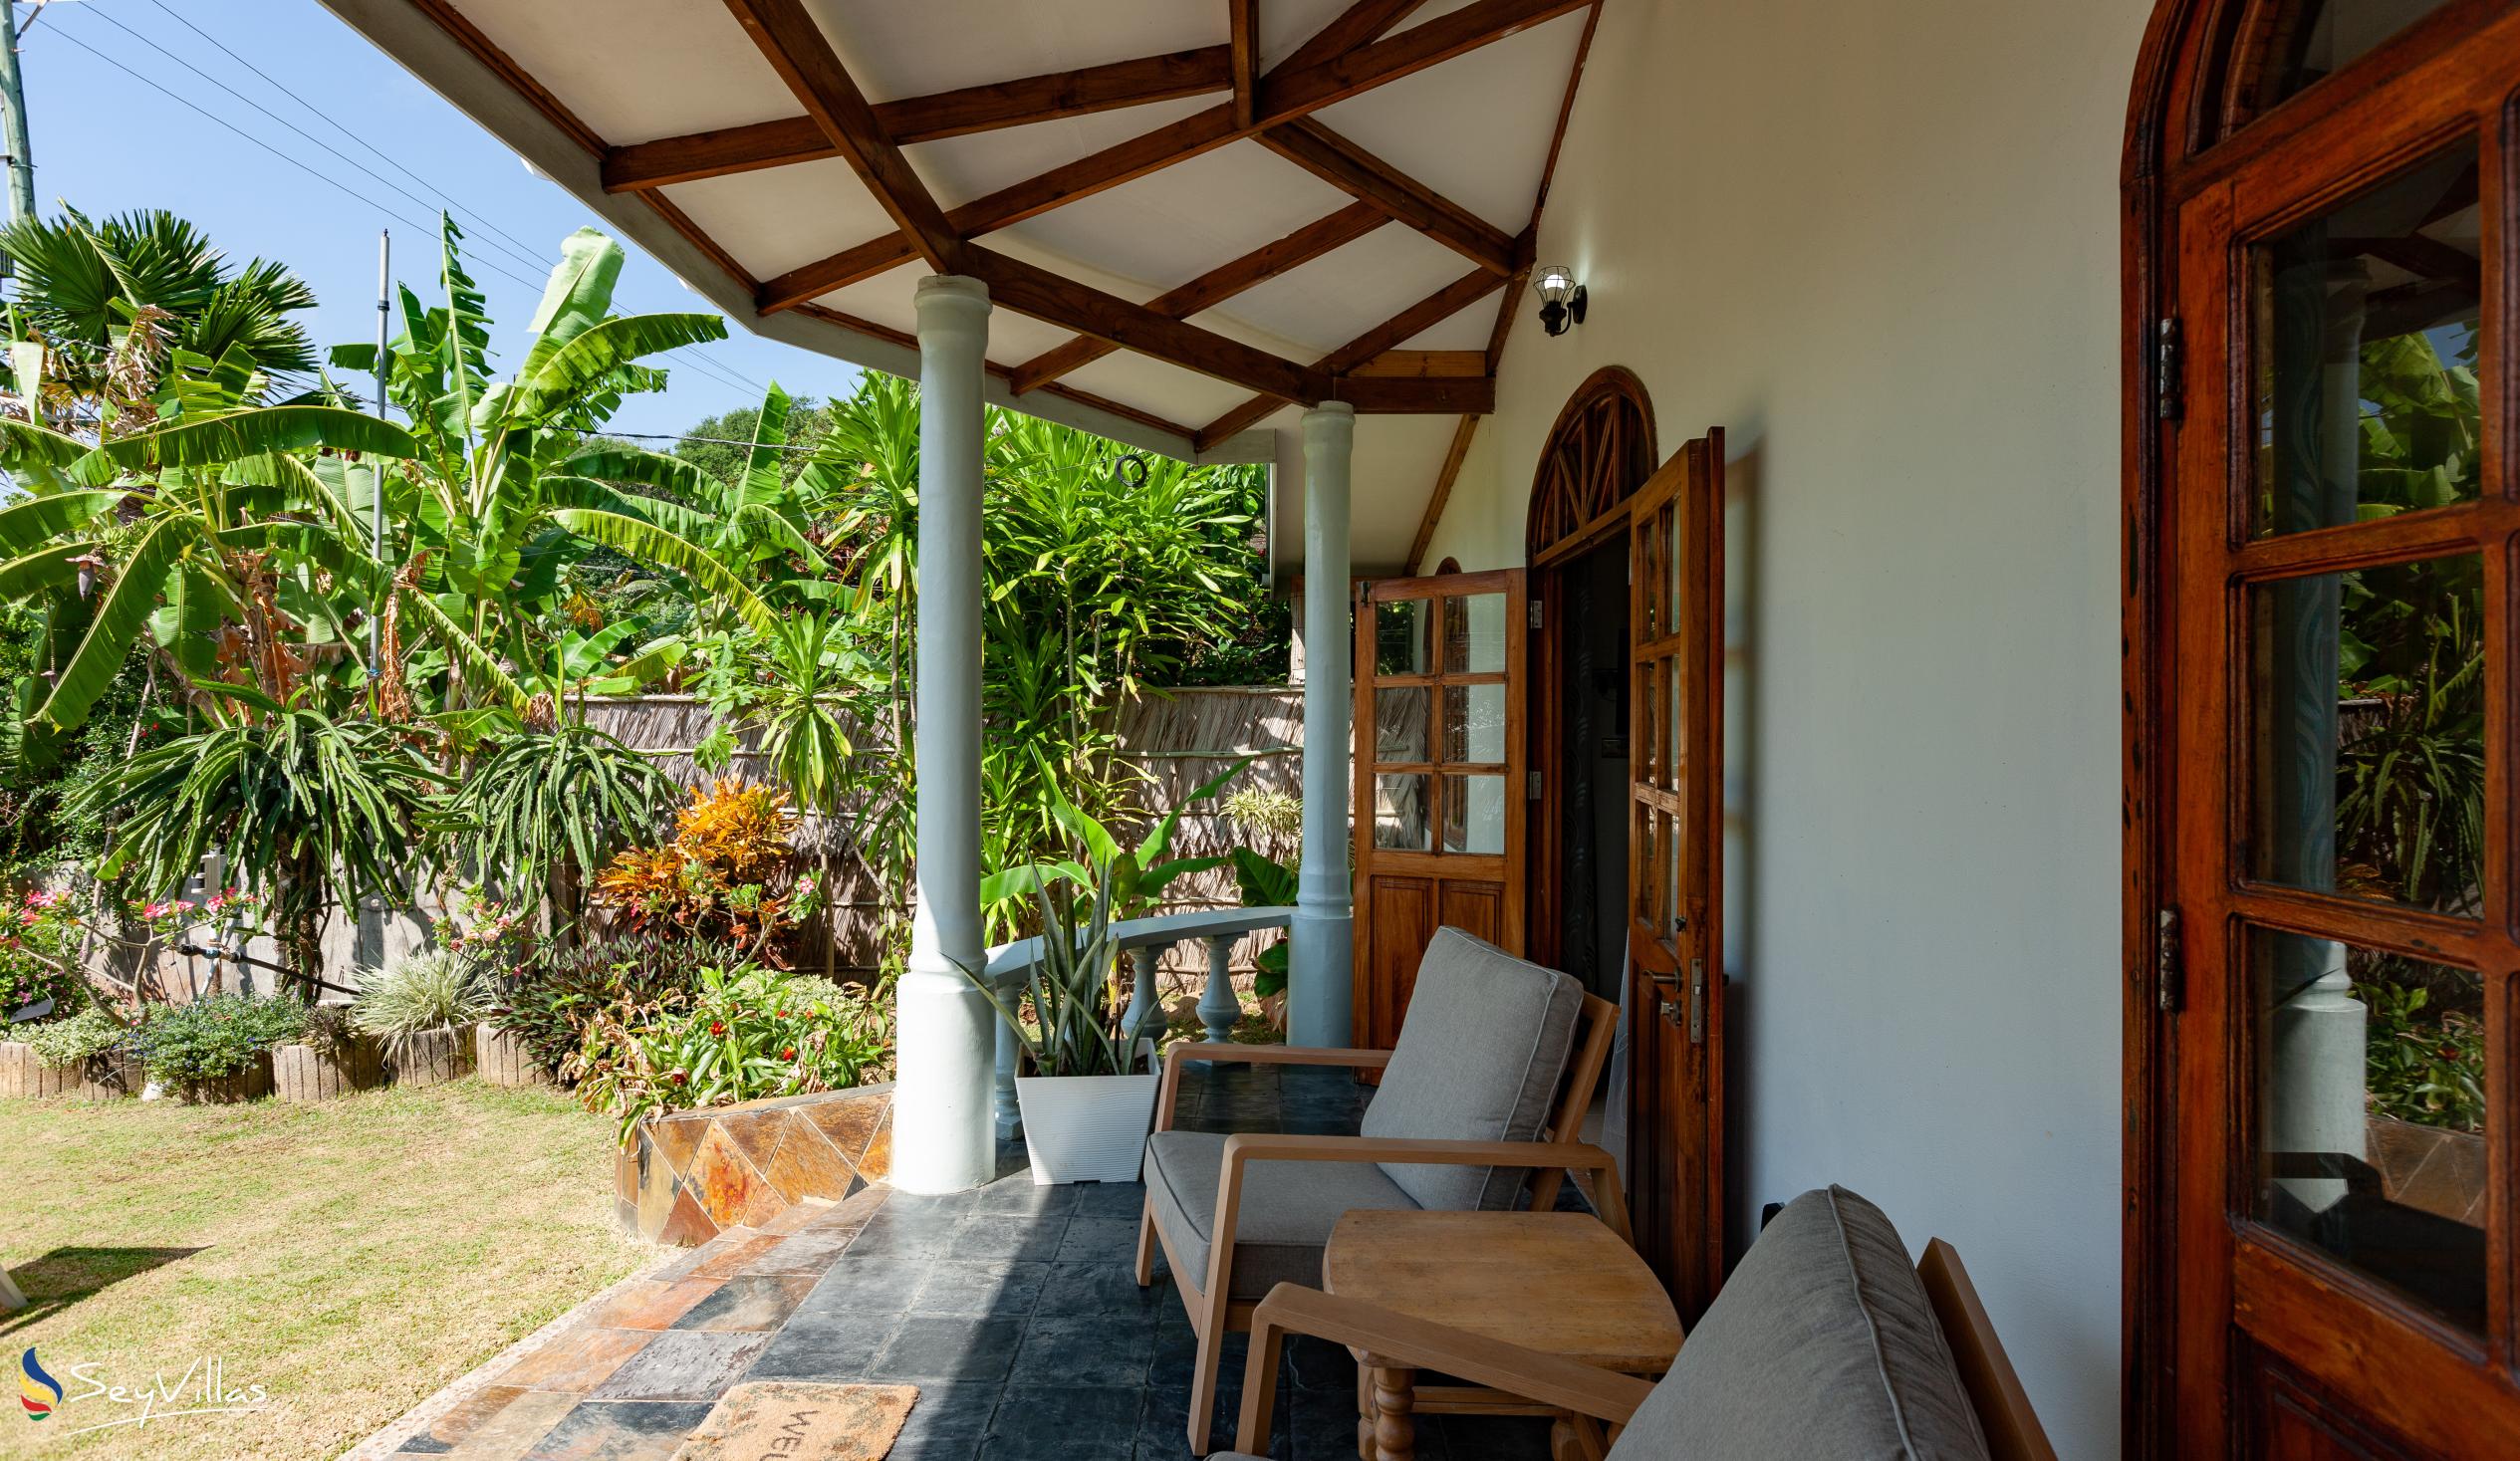 Foto 8: La Petite Maison - Aussenbereich - Praslin (Seychellen)